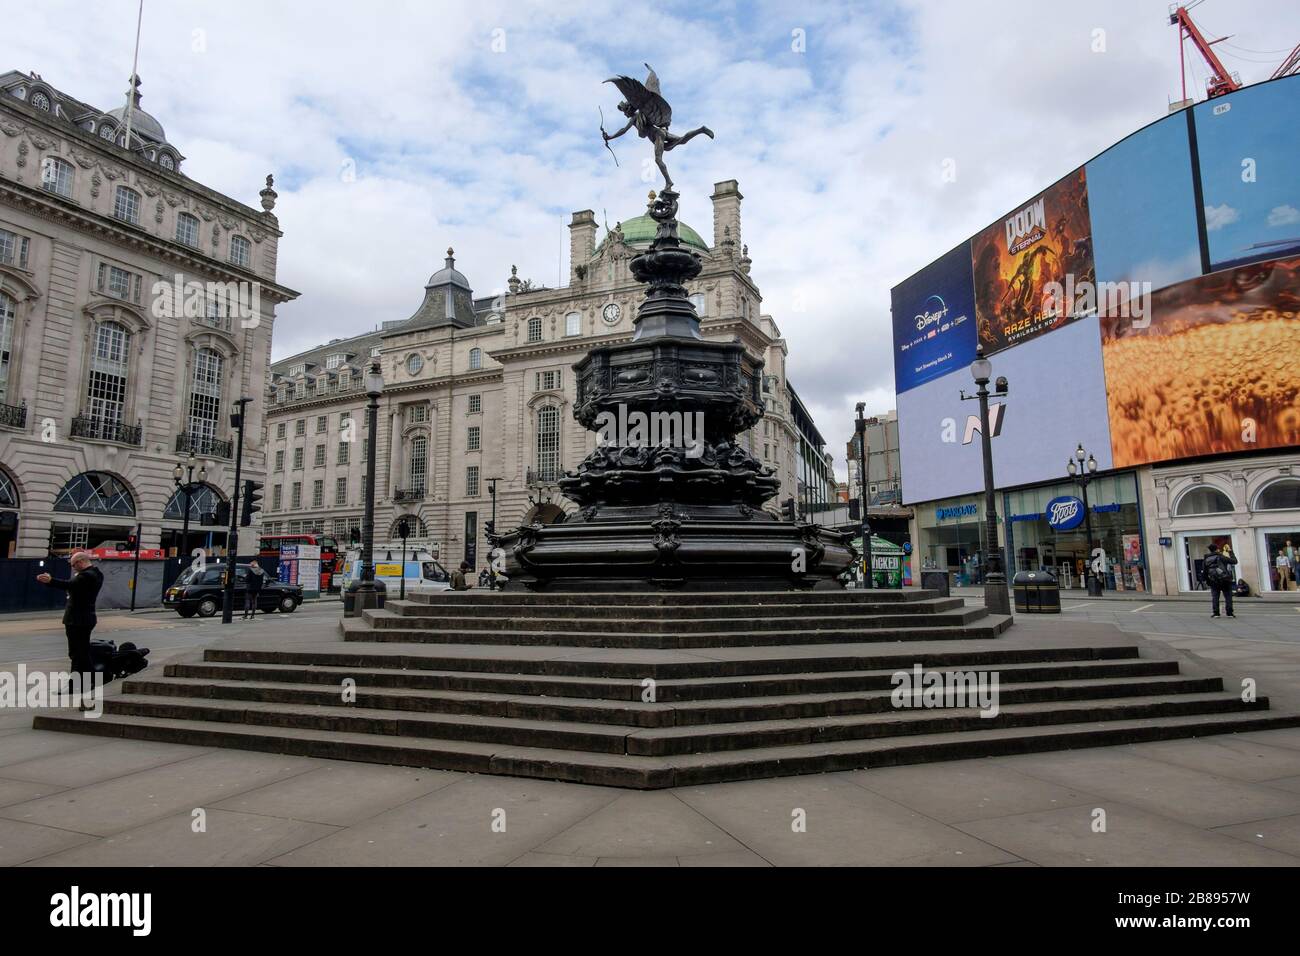 Londra, Regno Unito. 20 marzo 2020. La statua di Eros a Piccadilly Circus, normalmente un punto focale per i visitatori di Londra, è praticamente deserta come la gente stare lontano dal centro della città. Foto Stock